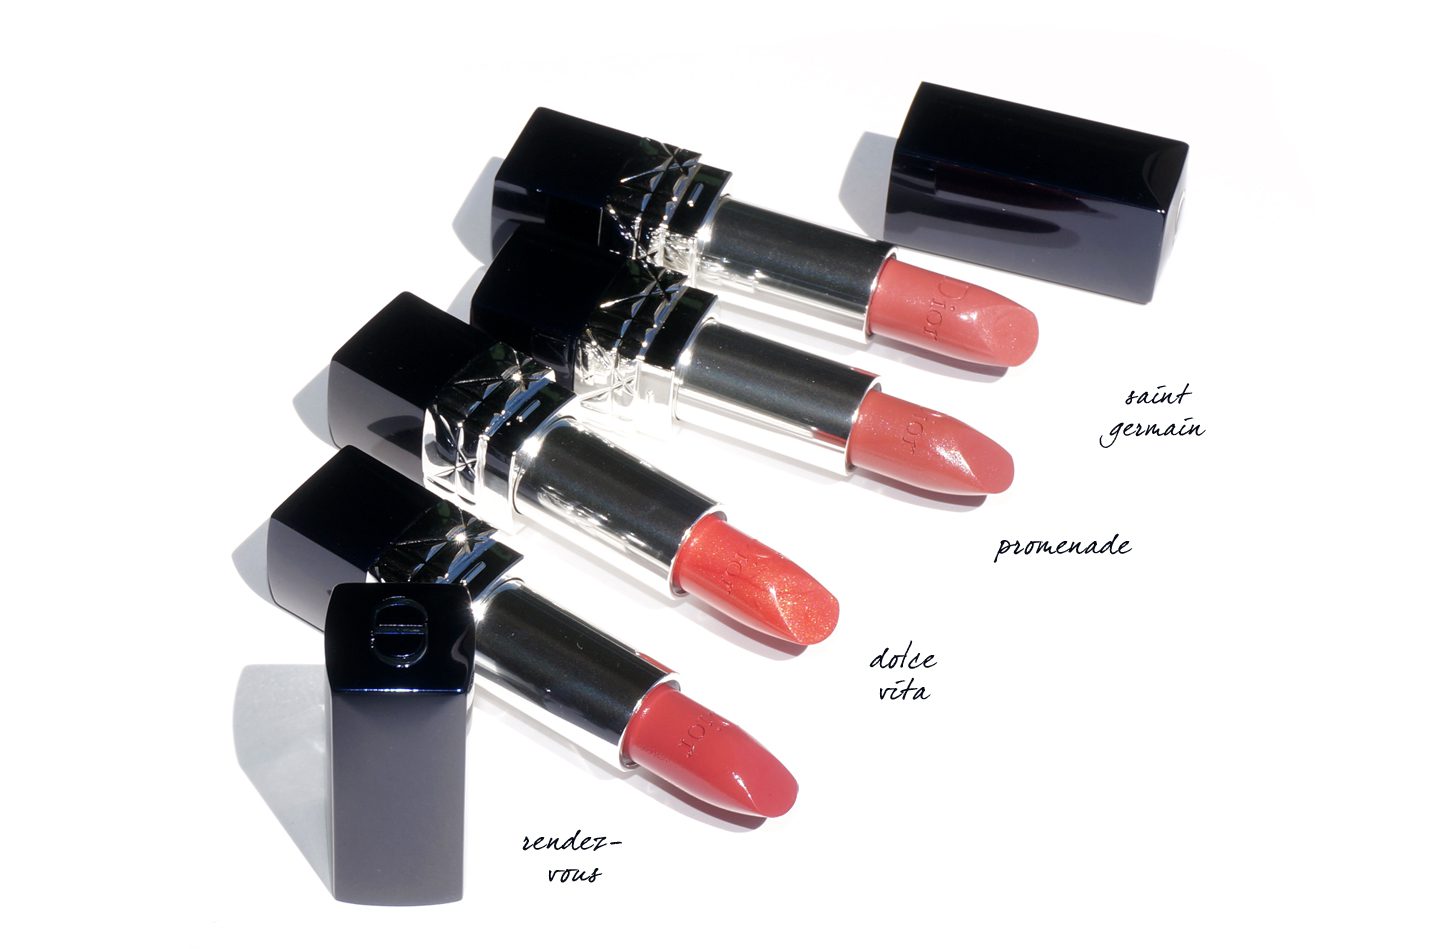 dior 434 lipstick dior couture color comfort and wear lipstick in promenade